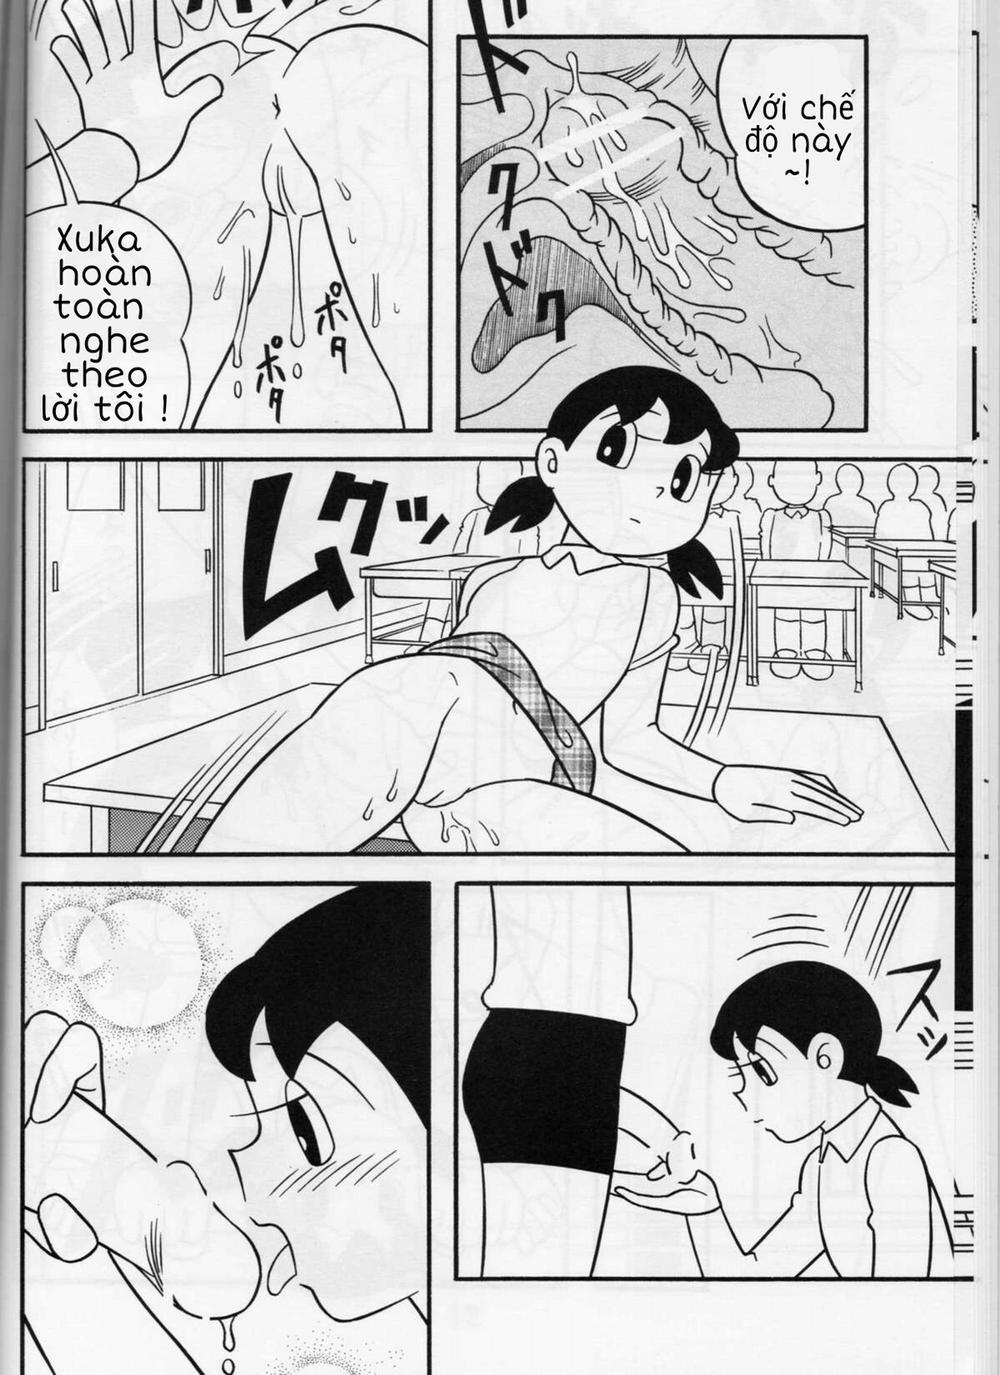 Tuyển Tập Doraemon Doujinshi 18+ Chương 1 M u c a t t c Trang 13